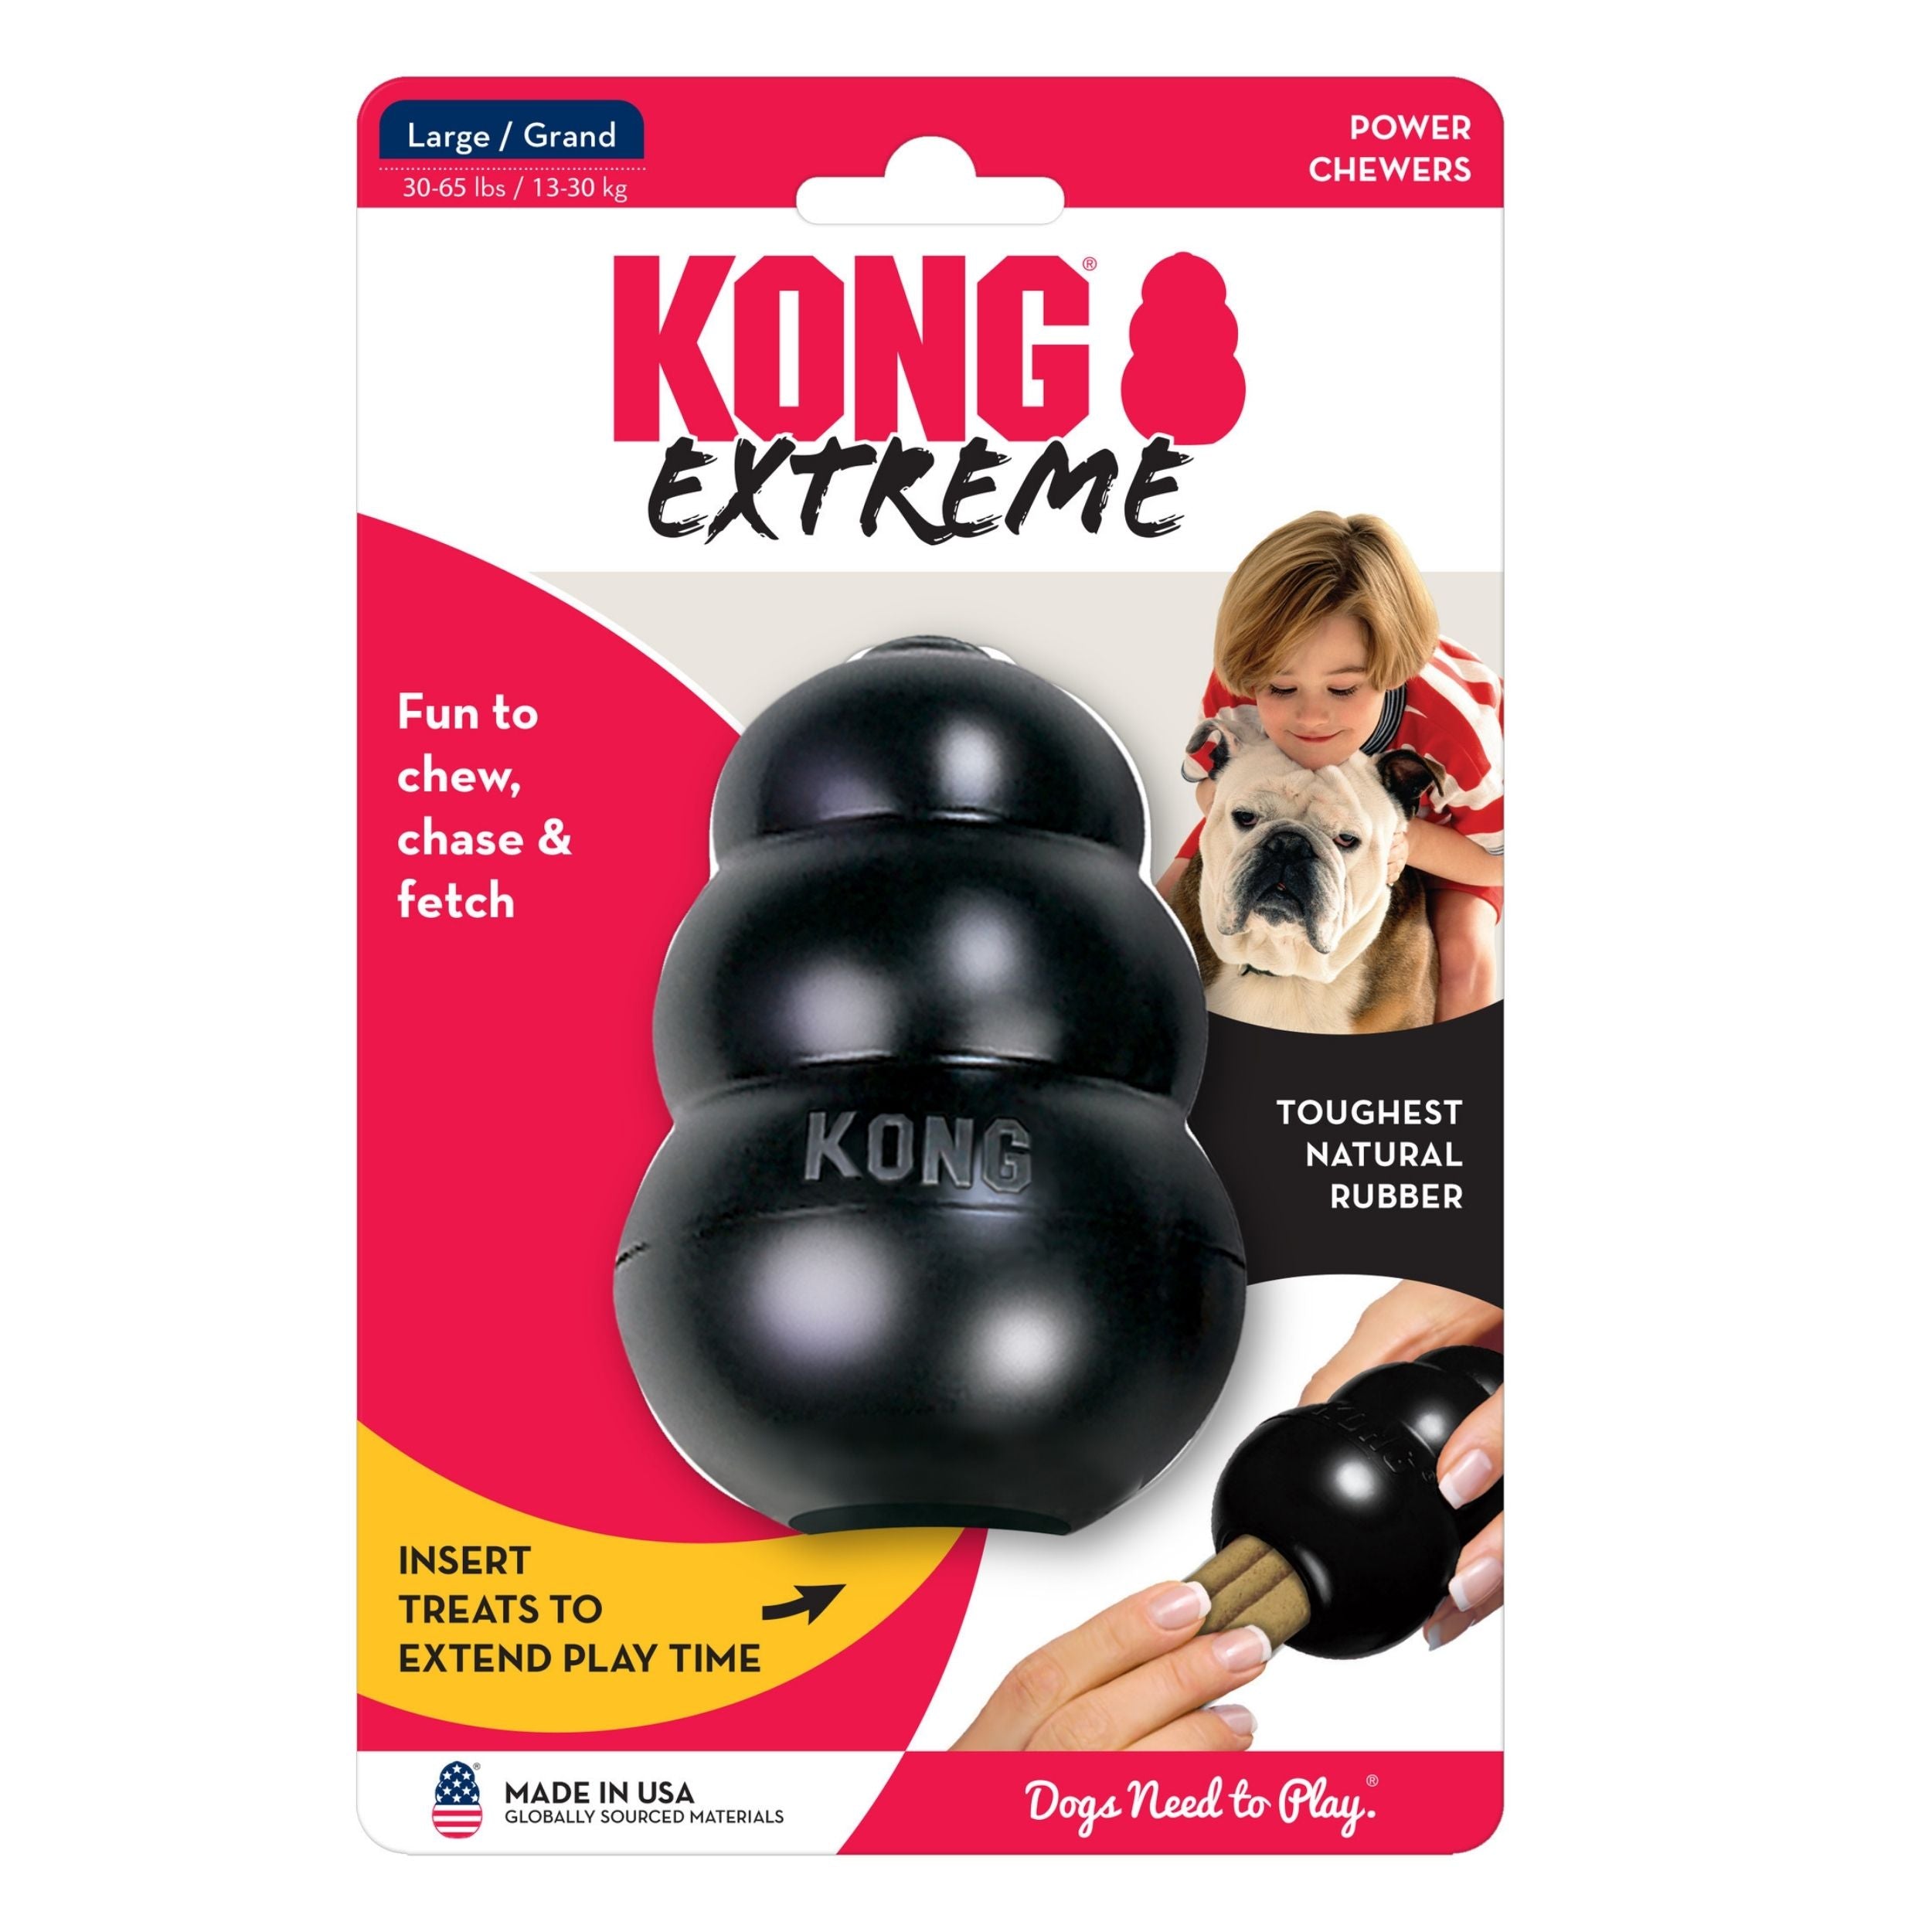 KONG Extreme Dog Toy Black 1ea/LG